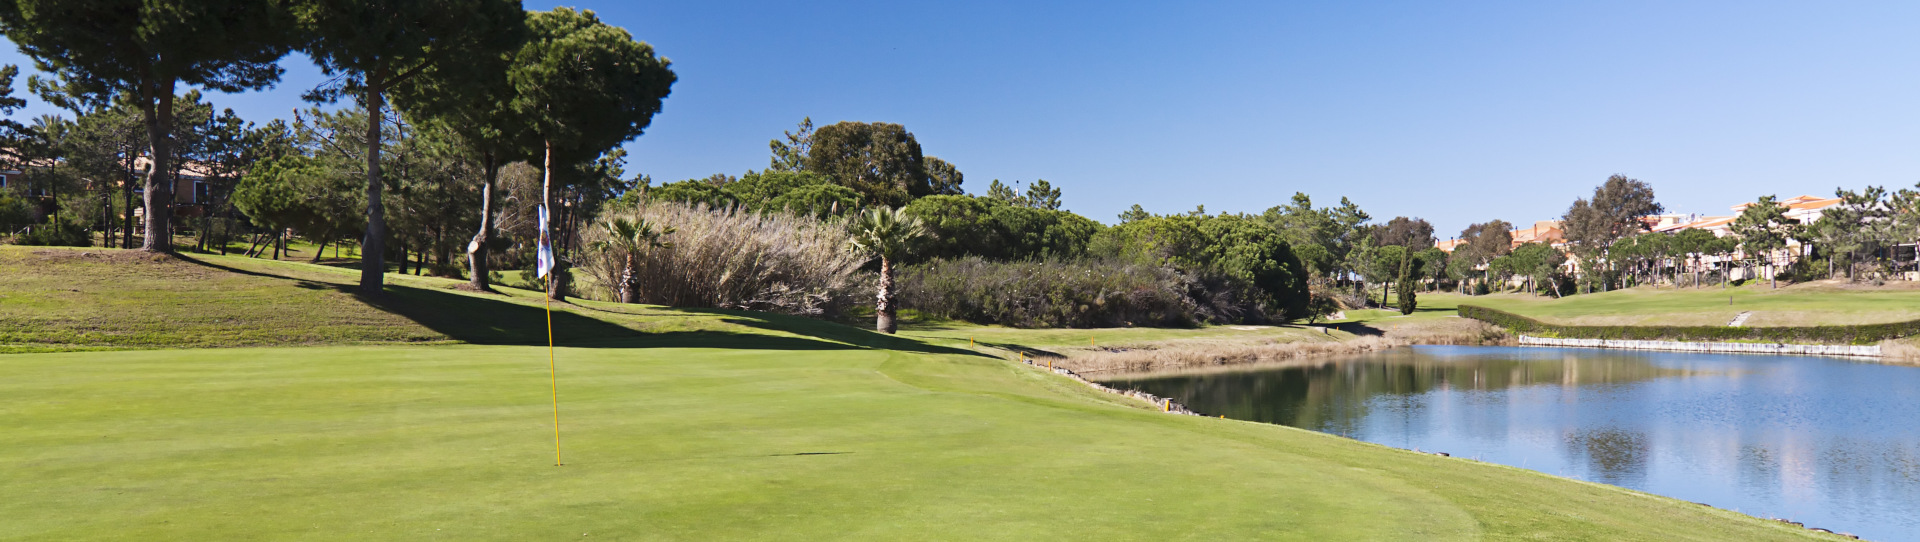 Spain golf courses - Islantilla Golf Course - Photo 1